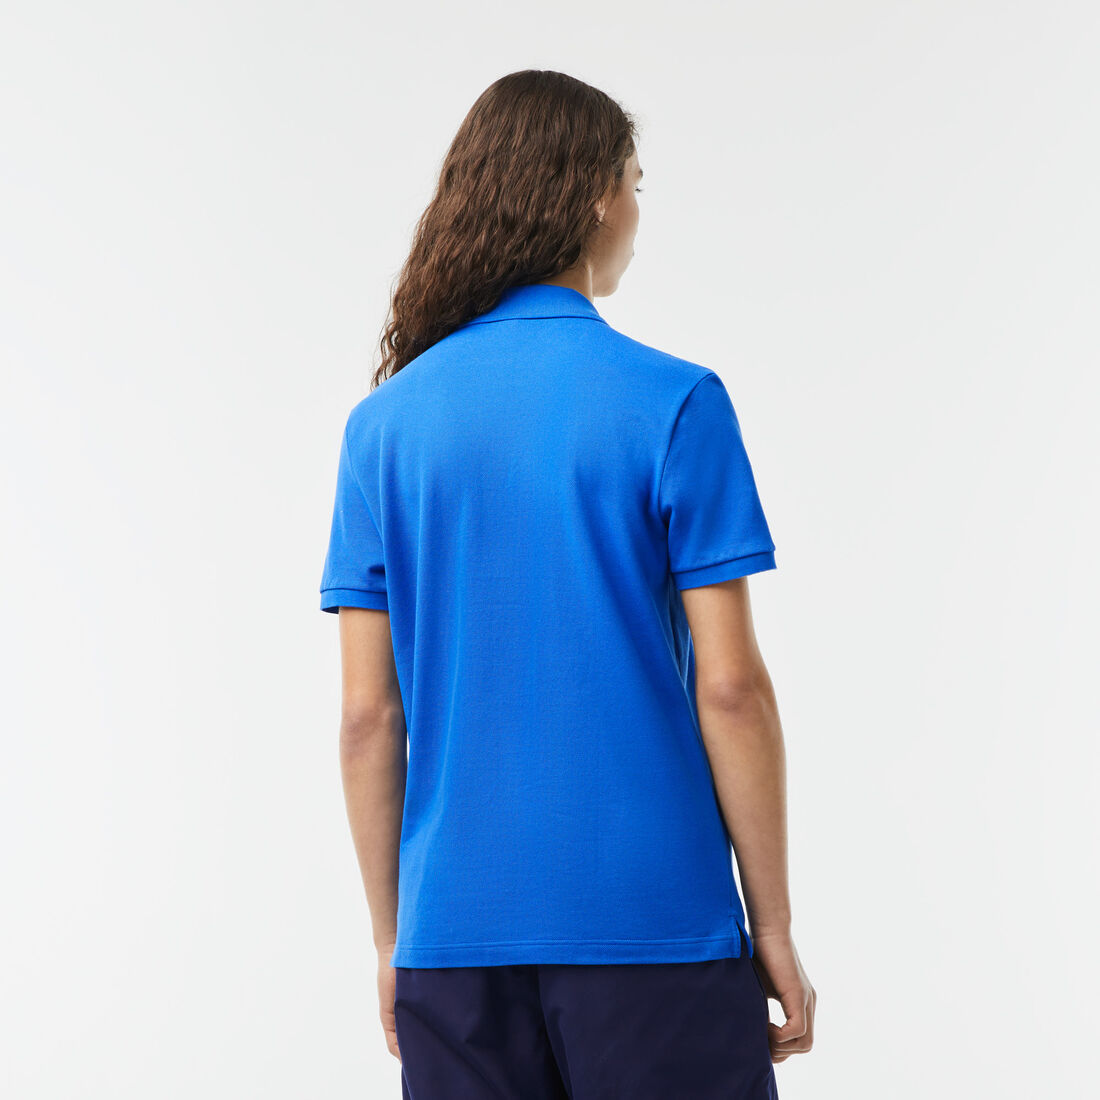 Lacoste Slim Fit In Petit Piqué Polo Shirts Herren Blau | KVQX-28934